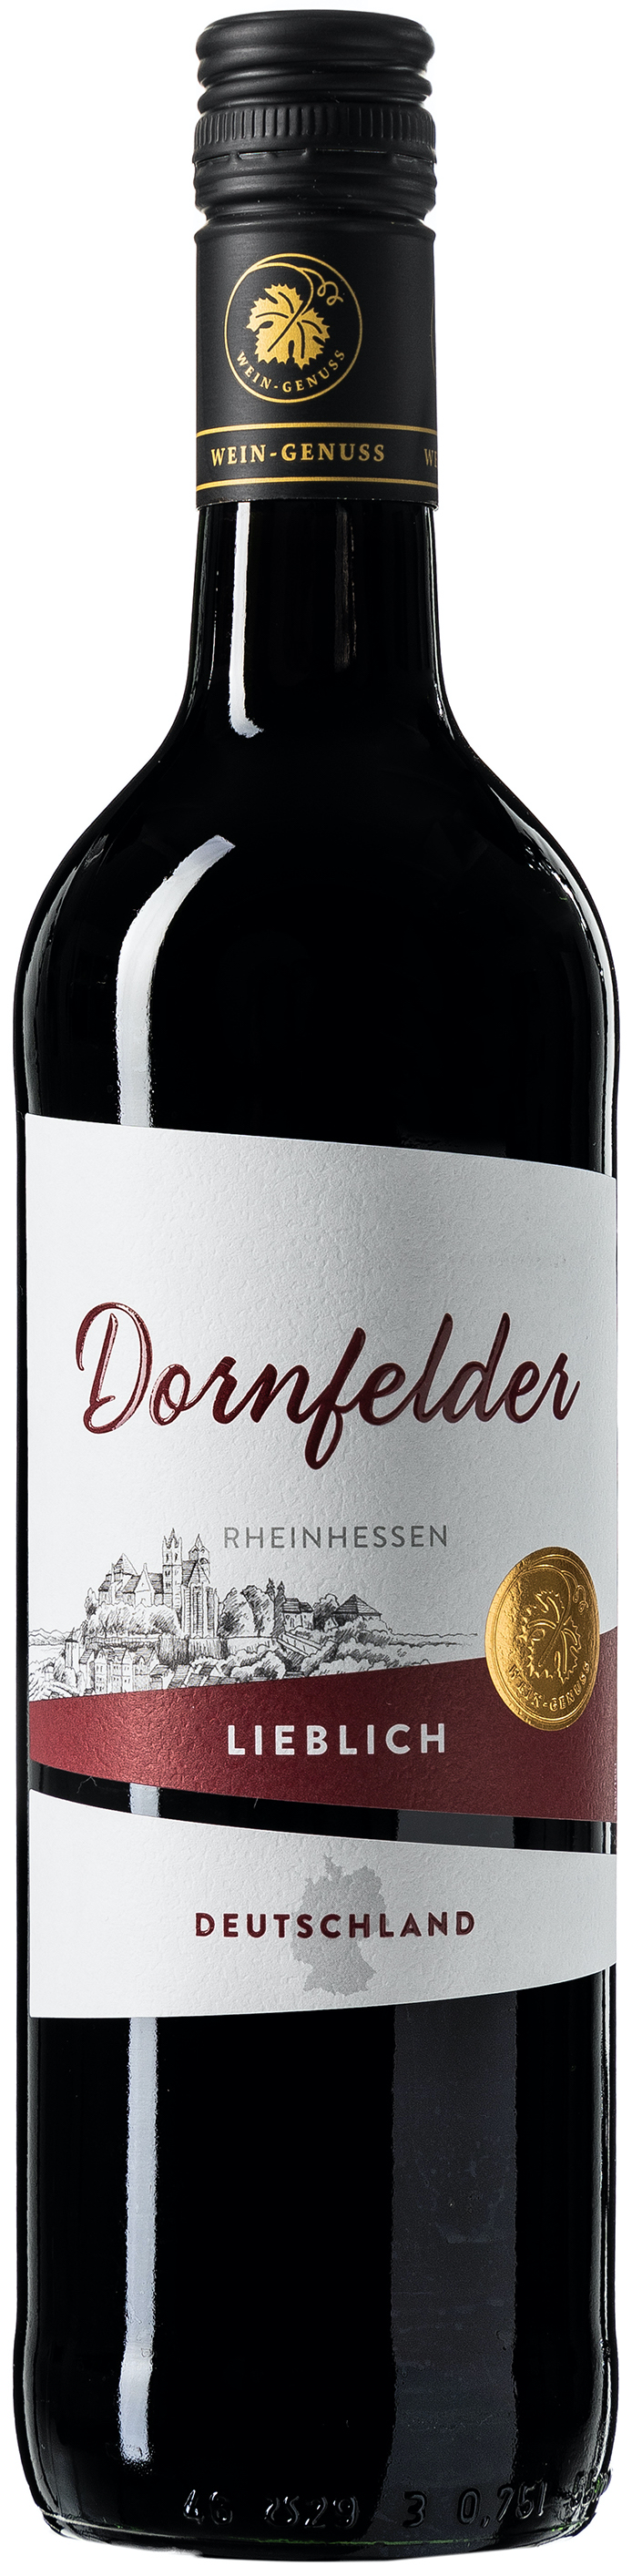 Wein-Genuss Dornfelder lieblich 10% vol. 0,75L